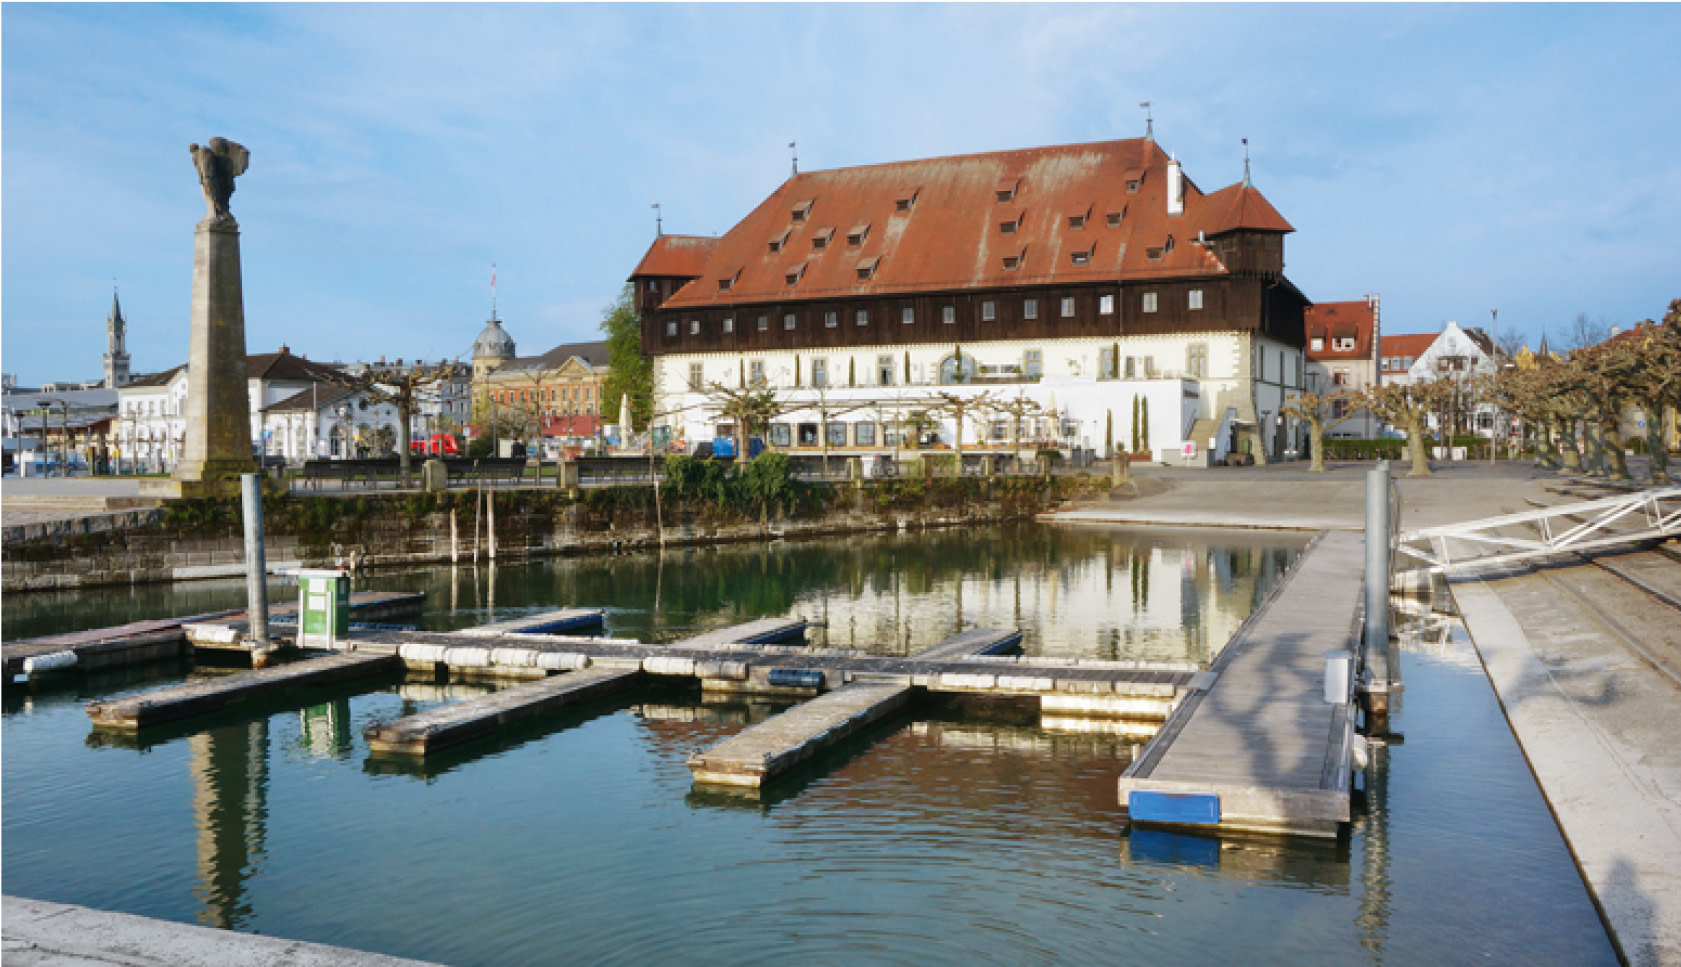 Das Konzilgebäude in Konstanz als Start- und Endpunkt des Stadtrundgangs durch Konstanz